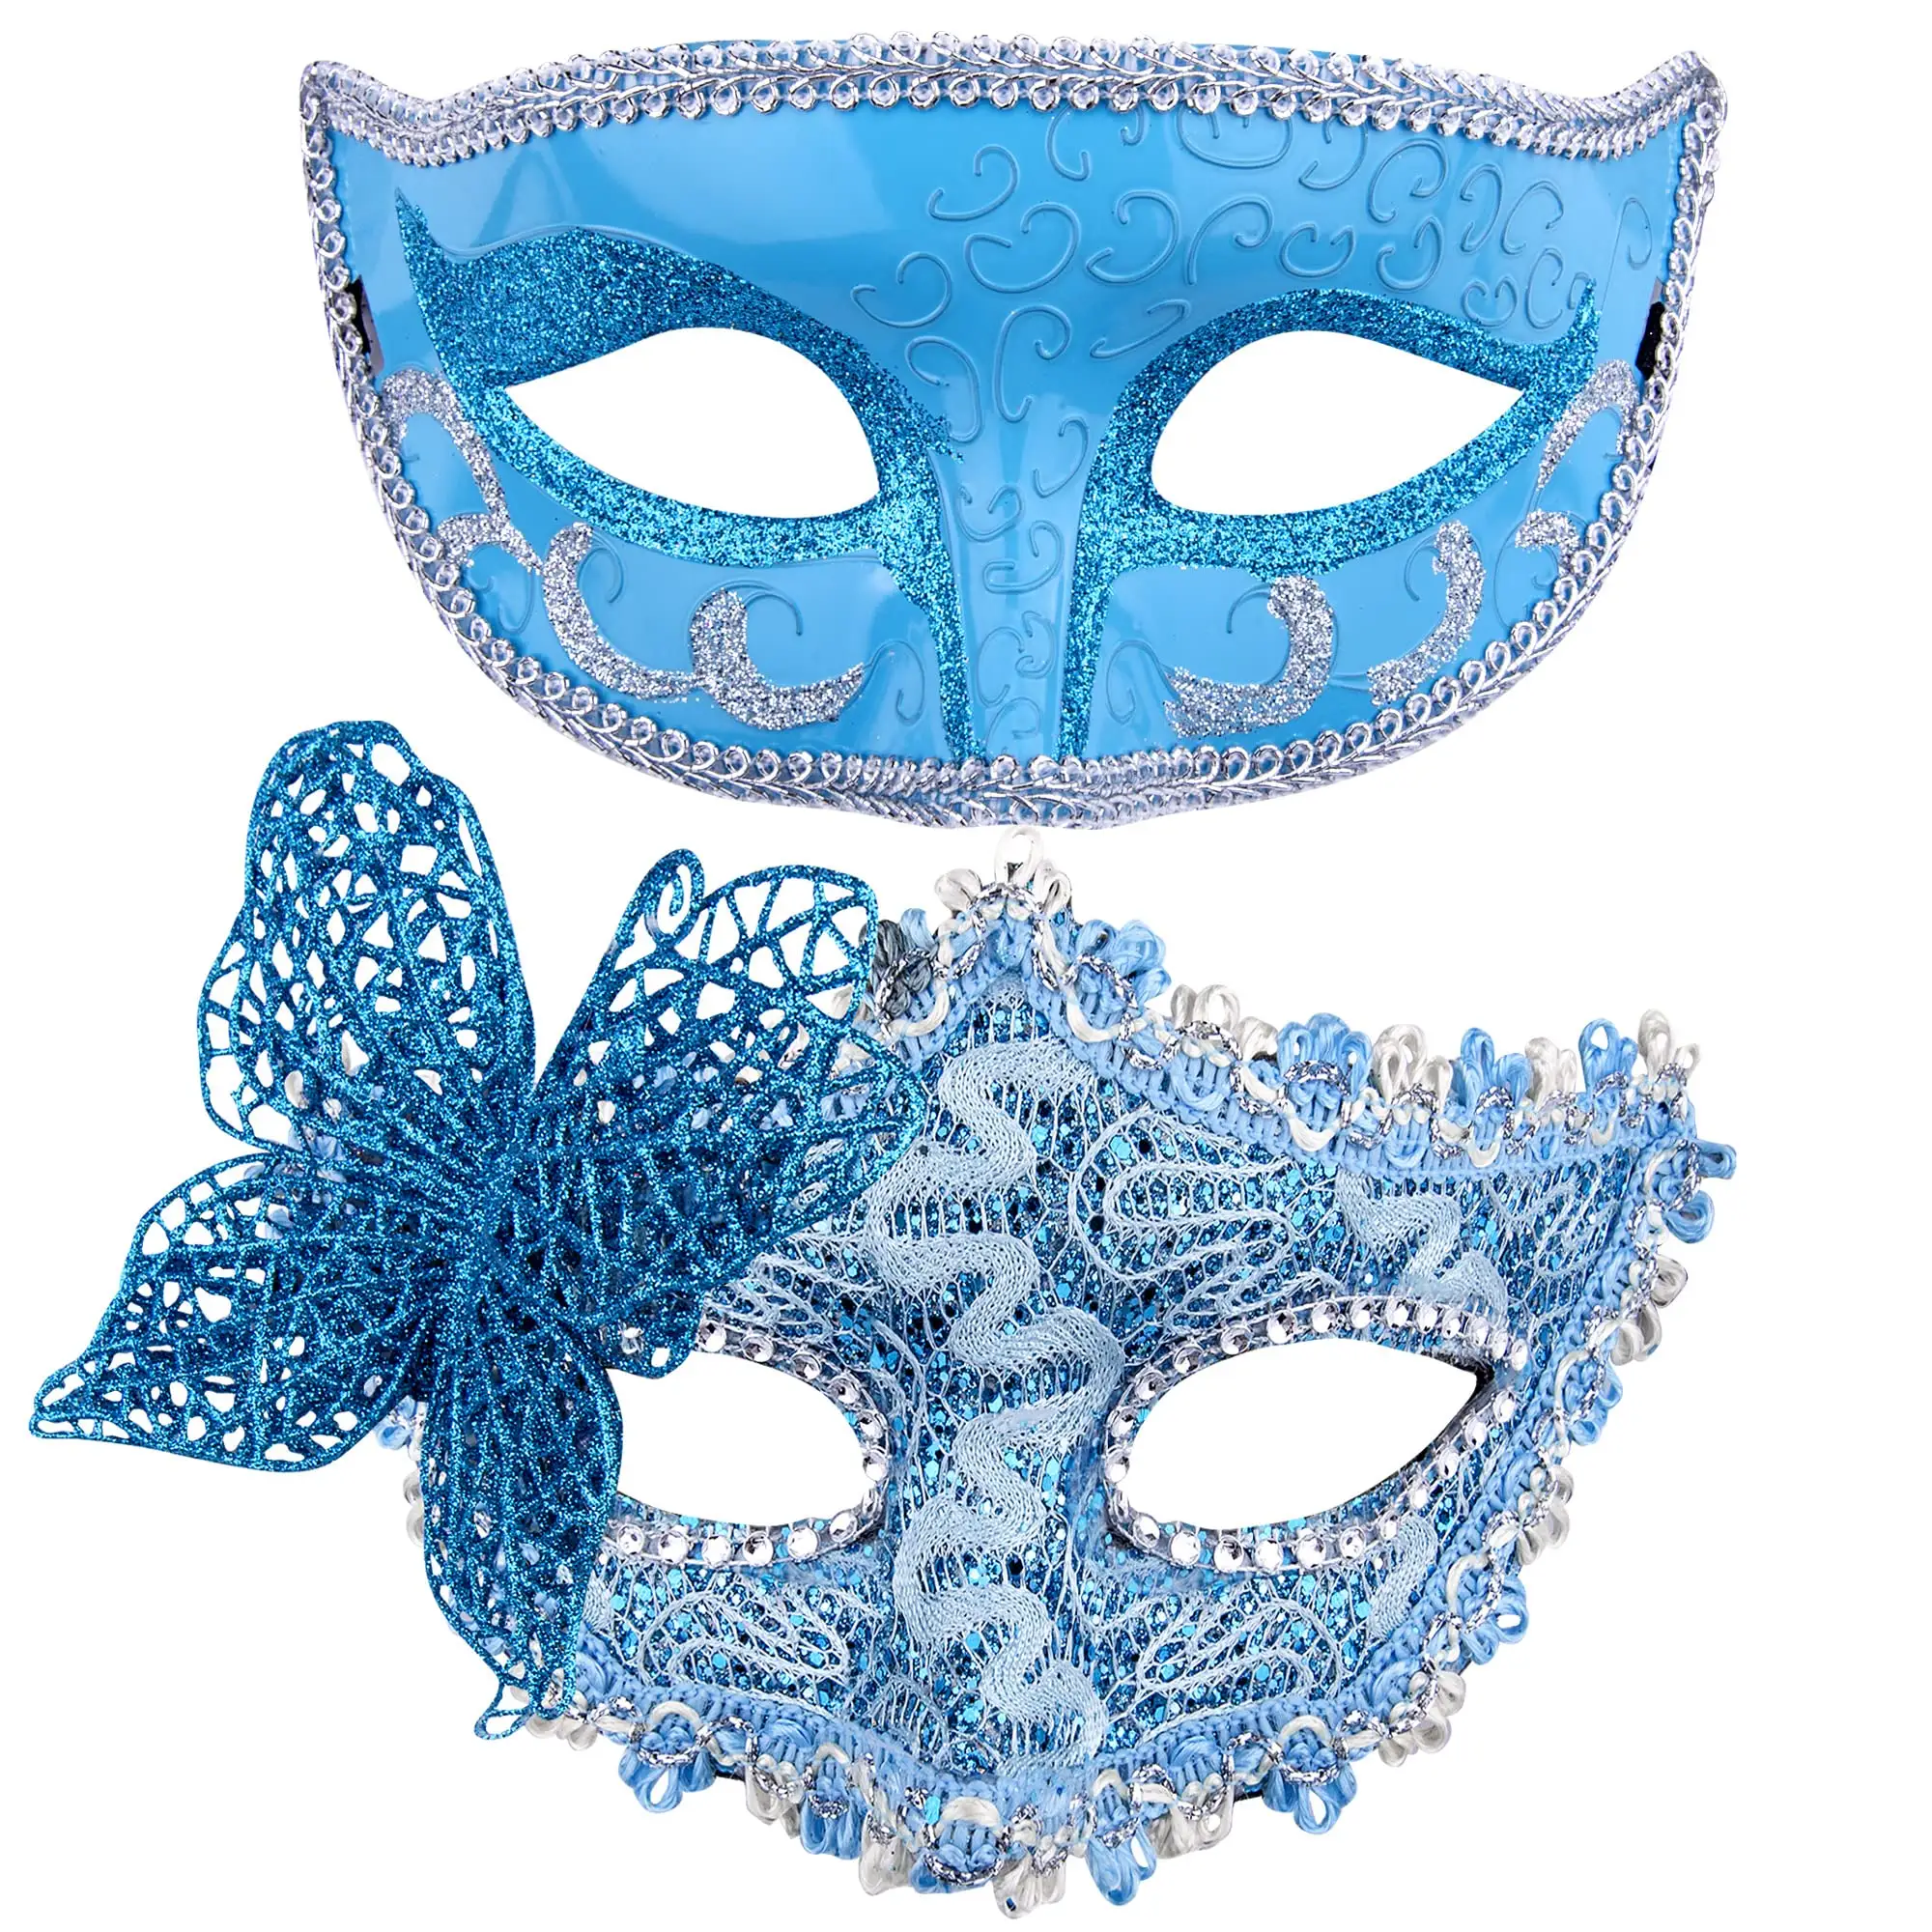 Pareja Mascarada Mariposa Máscaras Fiesta veneciana Plástico Disfraz de Halloween Máscara Mardi Gras Máscara para mujeres y hombres